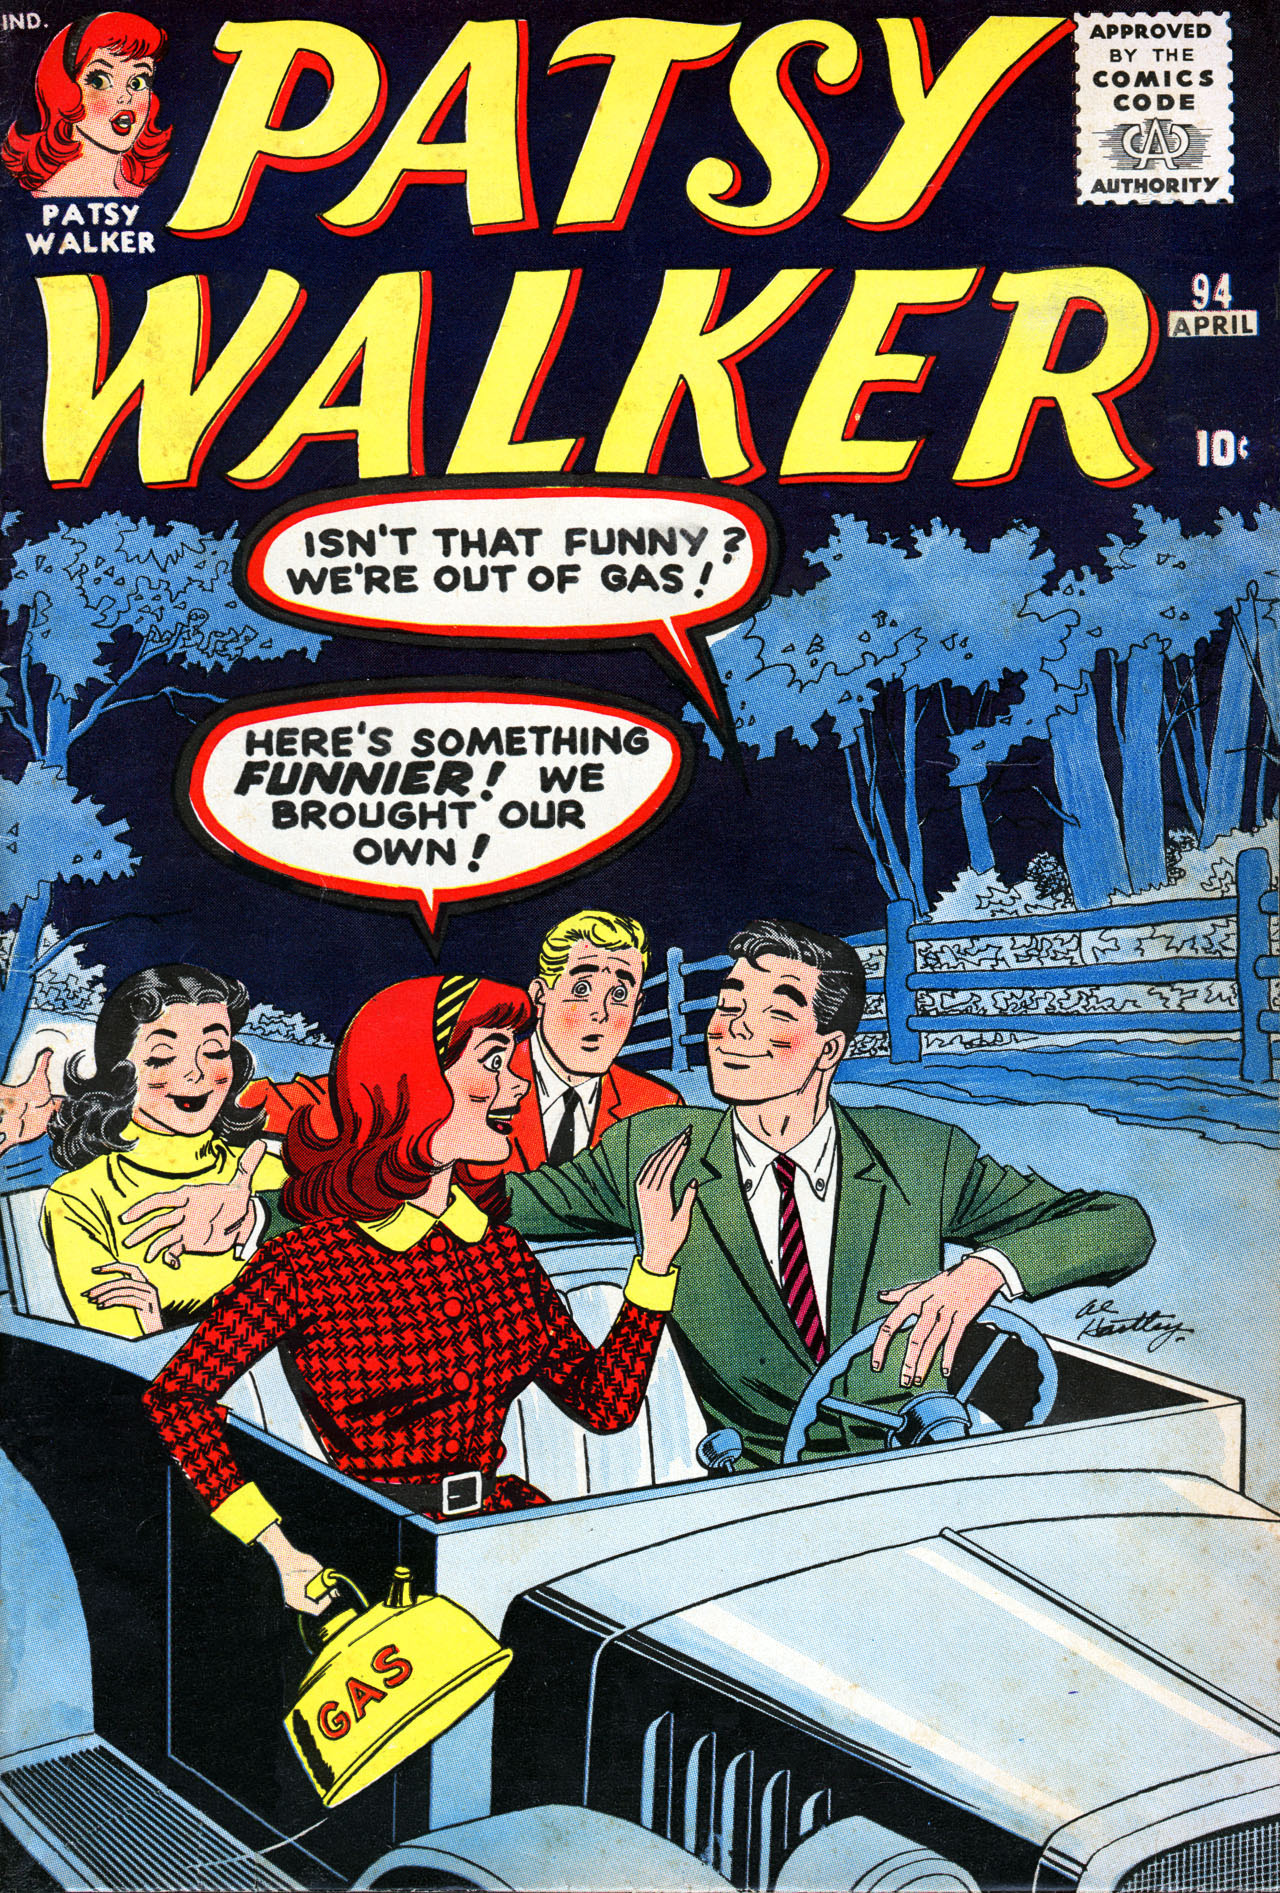 Read online Patsy Walker comic -  Issue #94 - 1